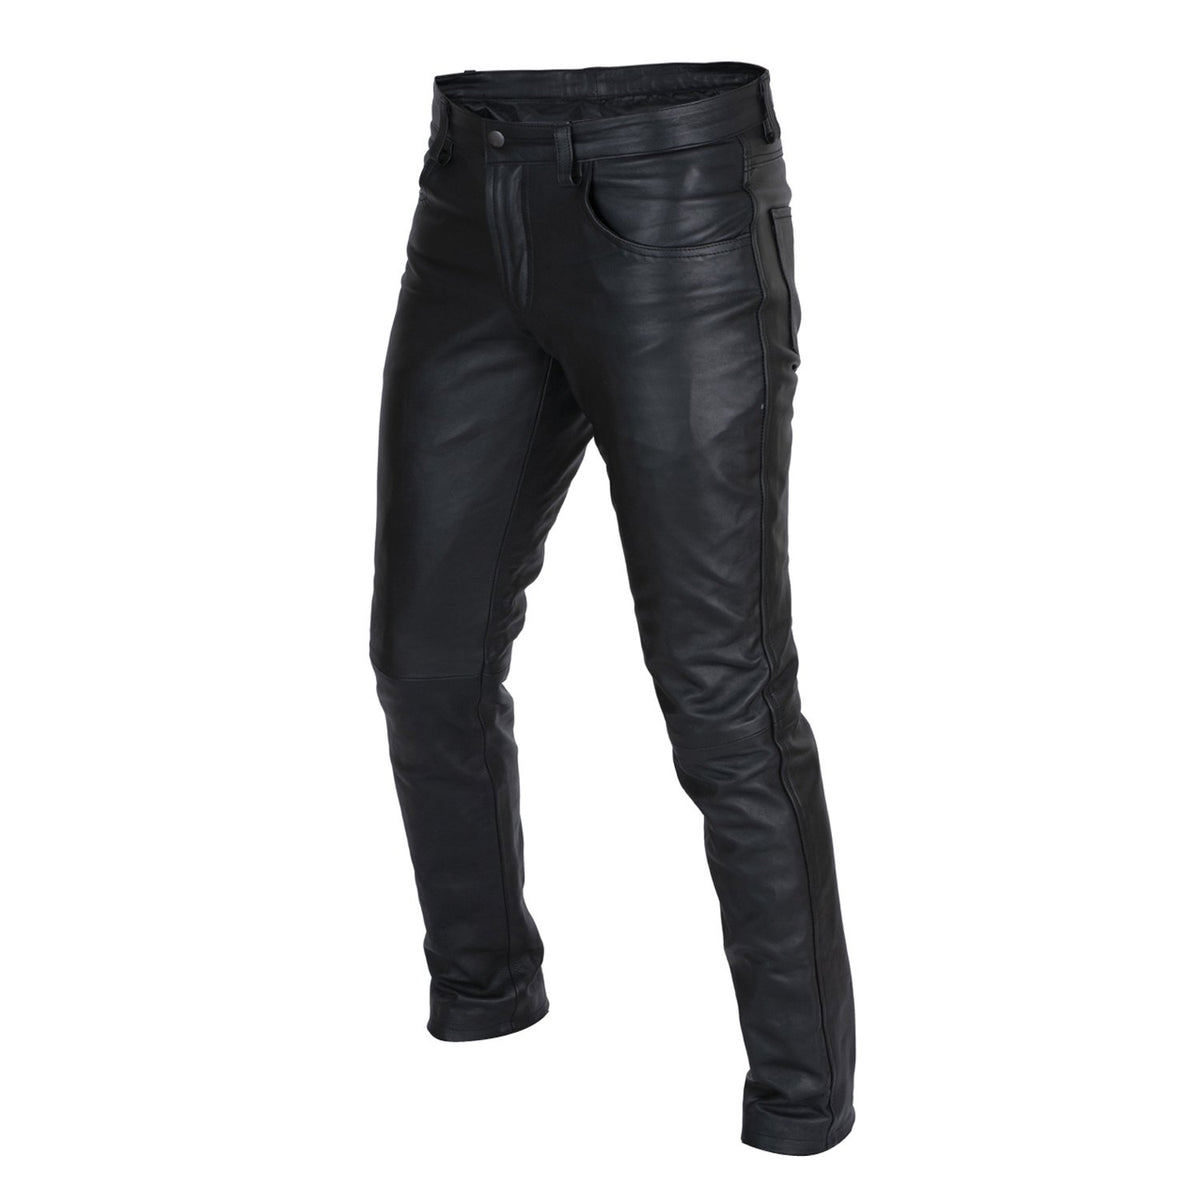 Mens Nightclub Genuine Black Leather Motorcycle Trousers Pants